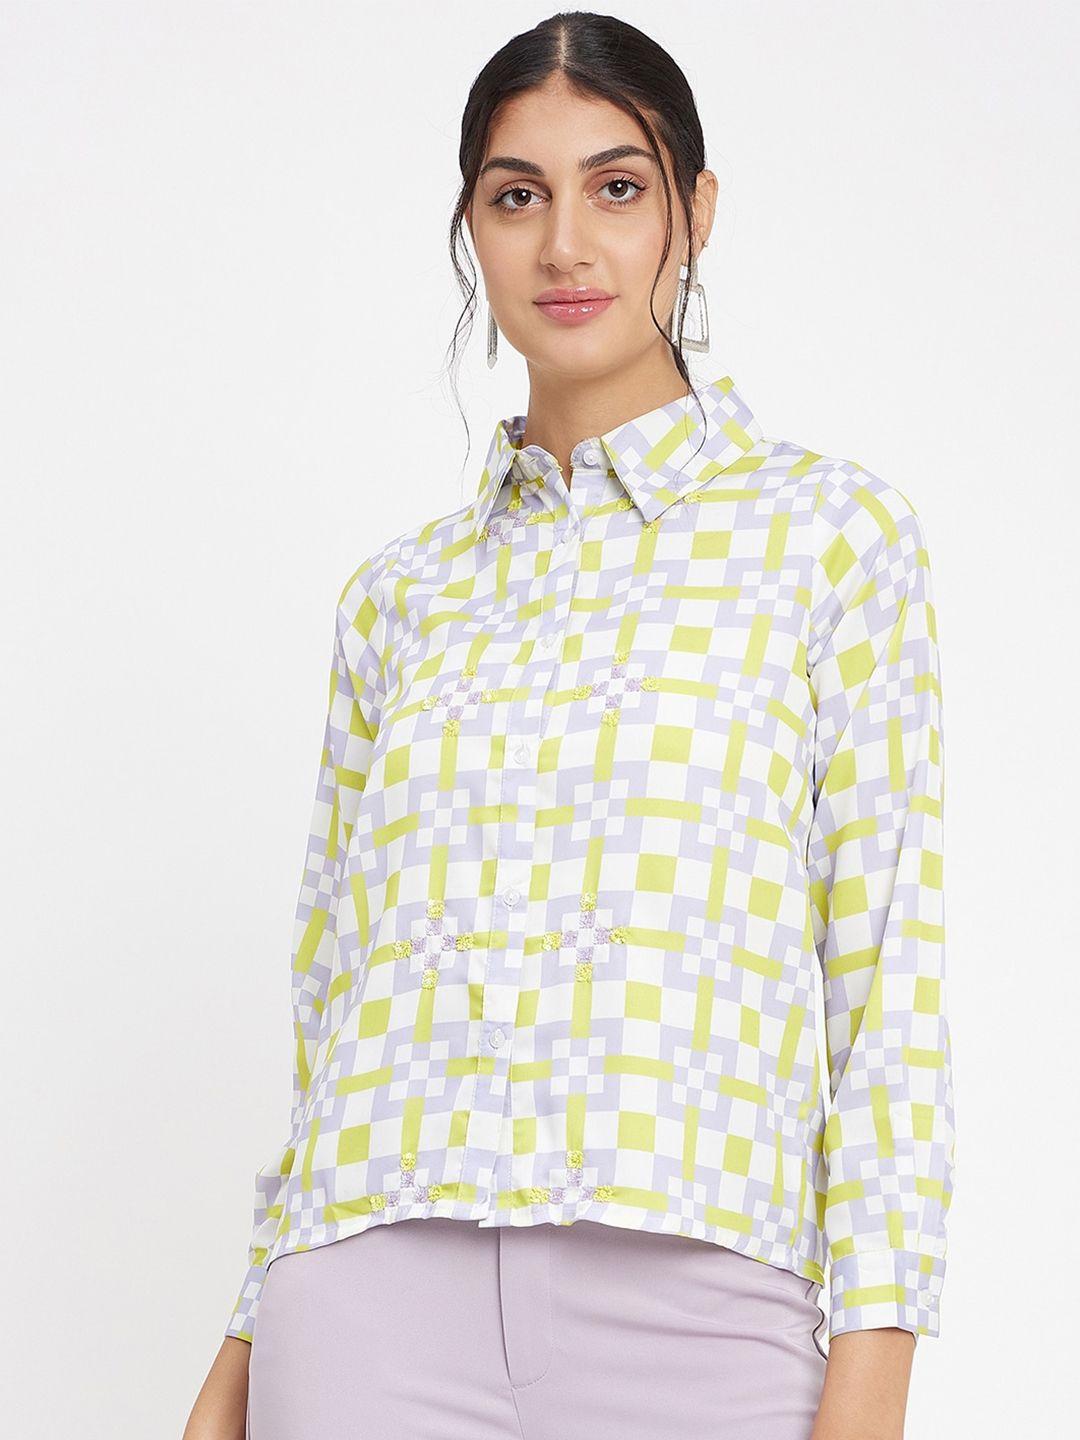 camla geometric printed spread collar casual shirt